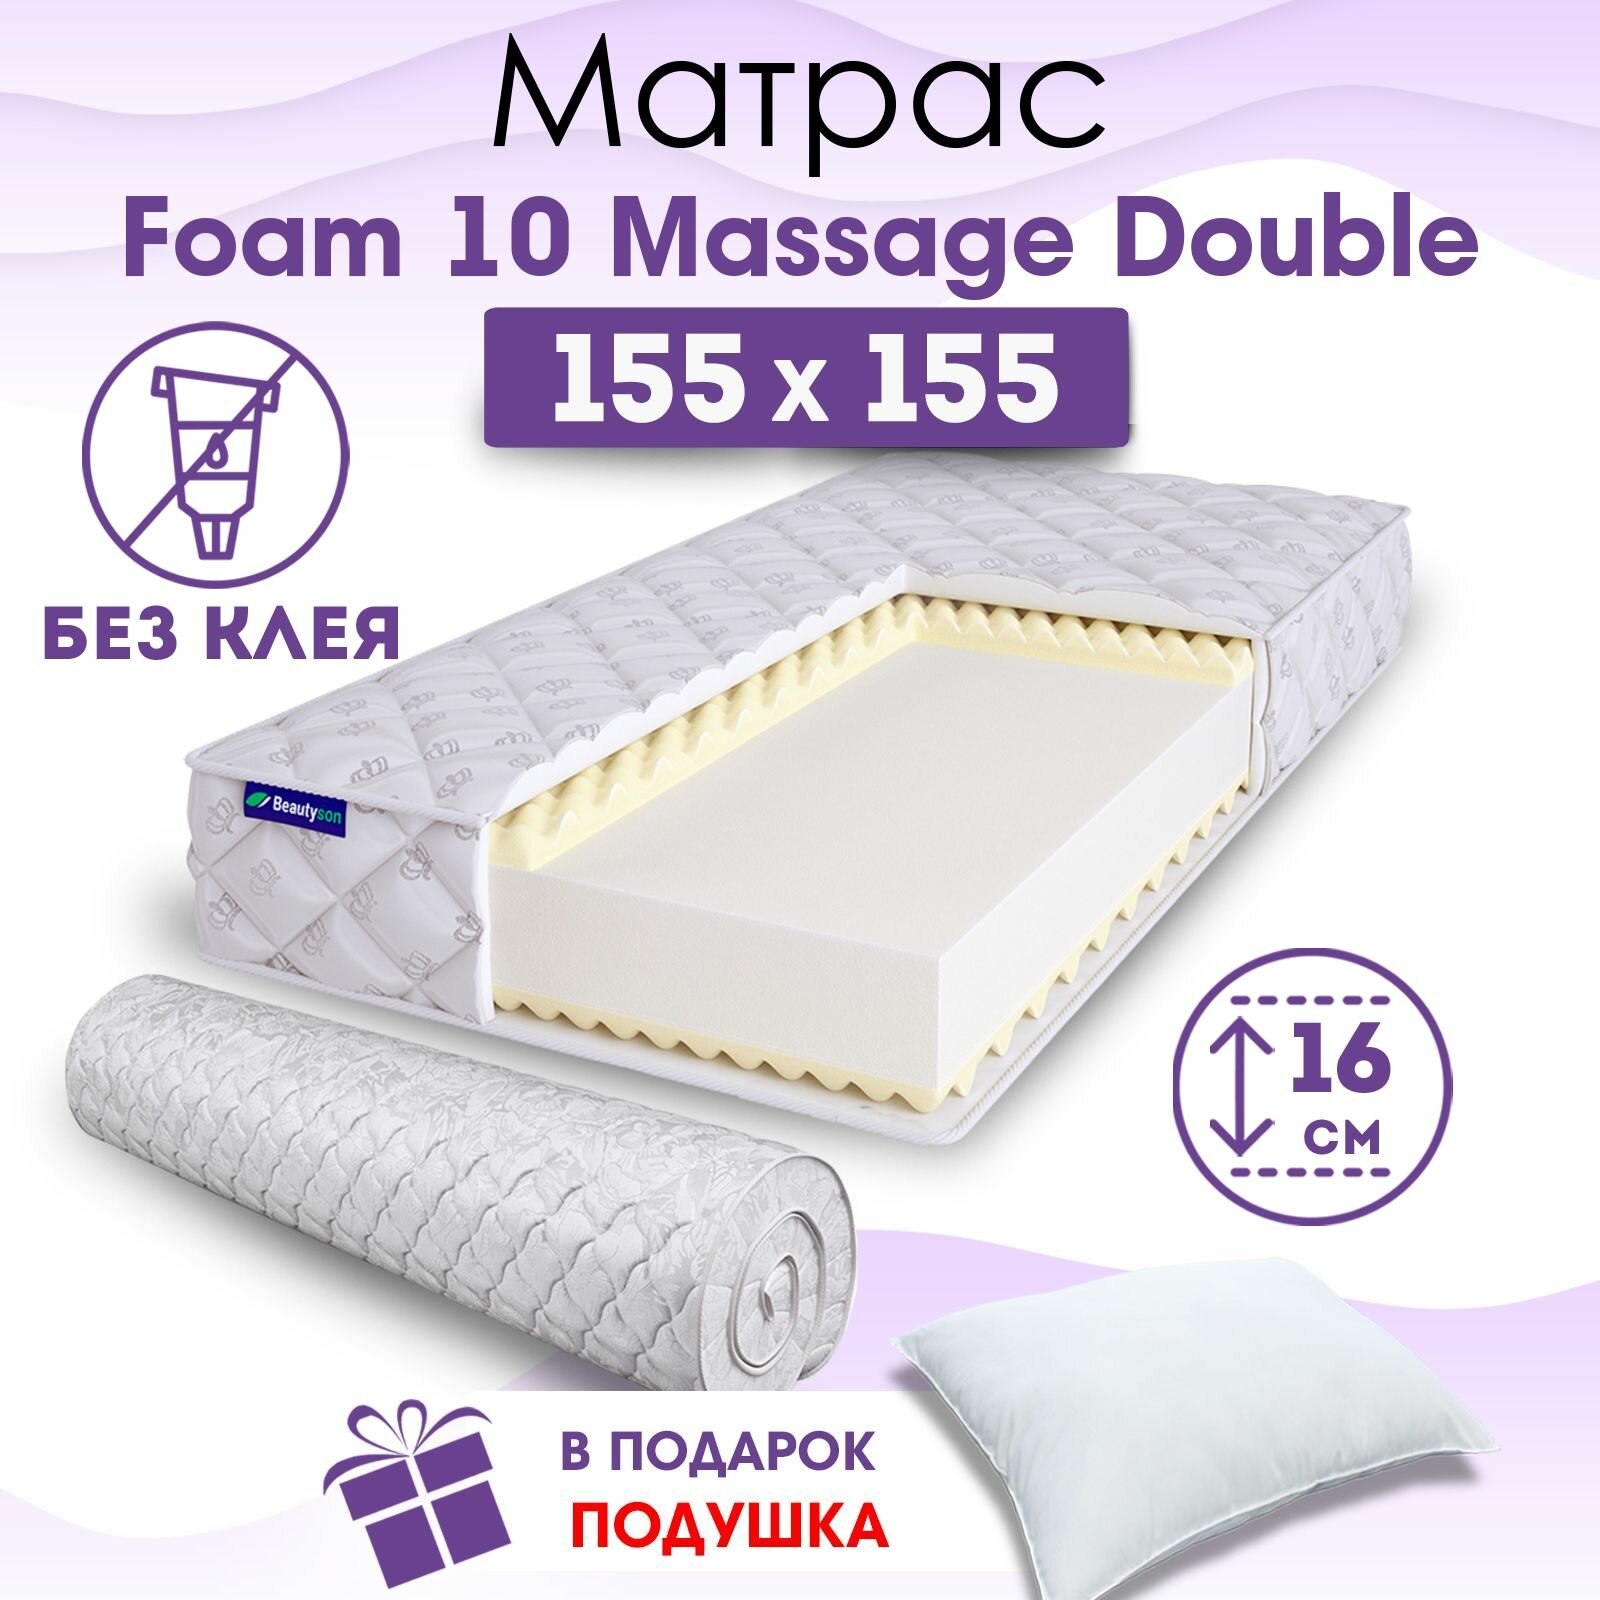 Ортопедический матрас Beautyson Foam 10 Massage Double без клея, 155х155, 16 см, беспружинный, двуспальный, на кровать, для дивана, мягкий, не высокий